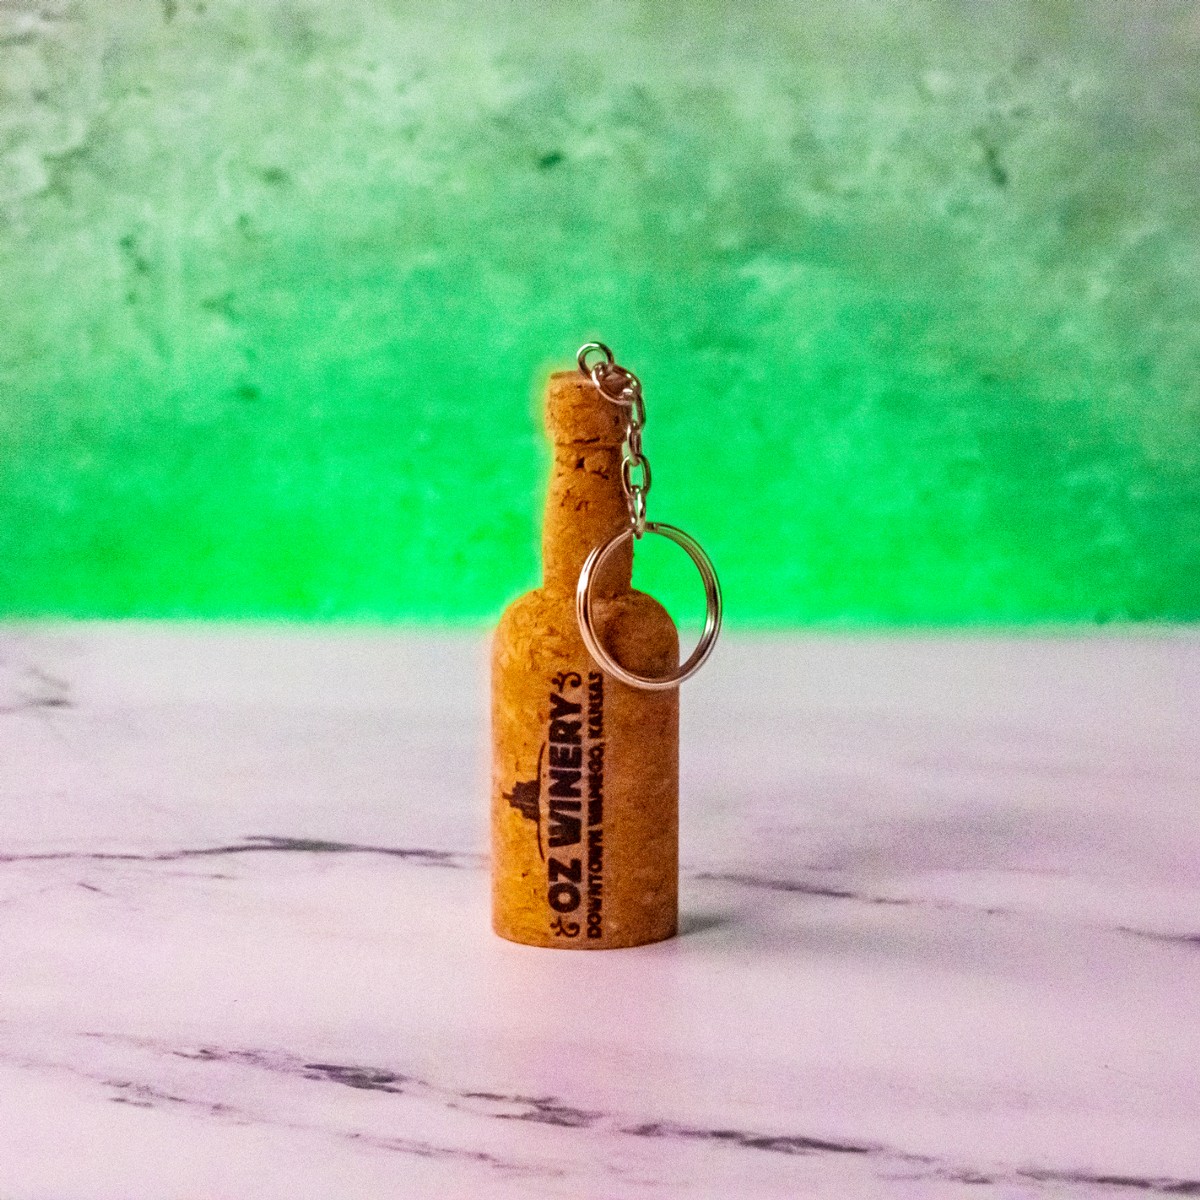 Oz Cork Bottle Keychain